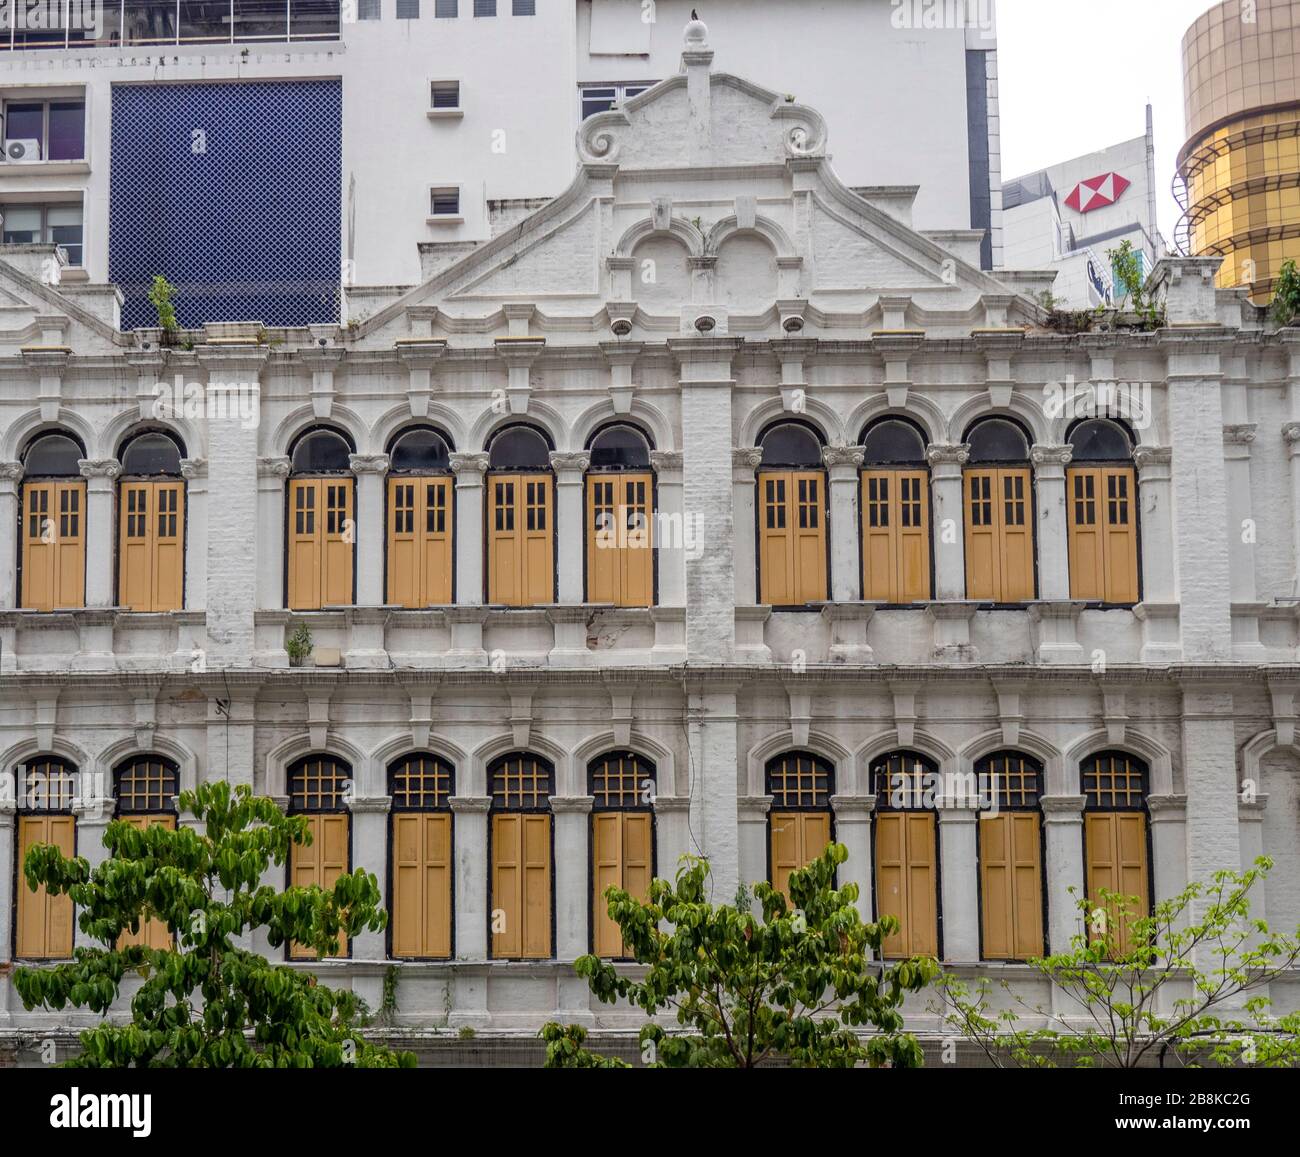 Fachada lateral del edificio tradicional frente a Medan Pasar Old Market Square Chinatown Kuala Lumpur Malaysia. Foto de stock